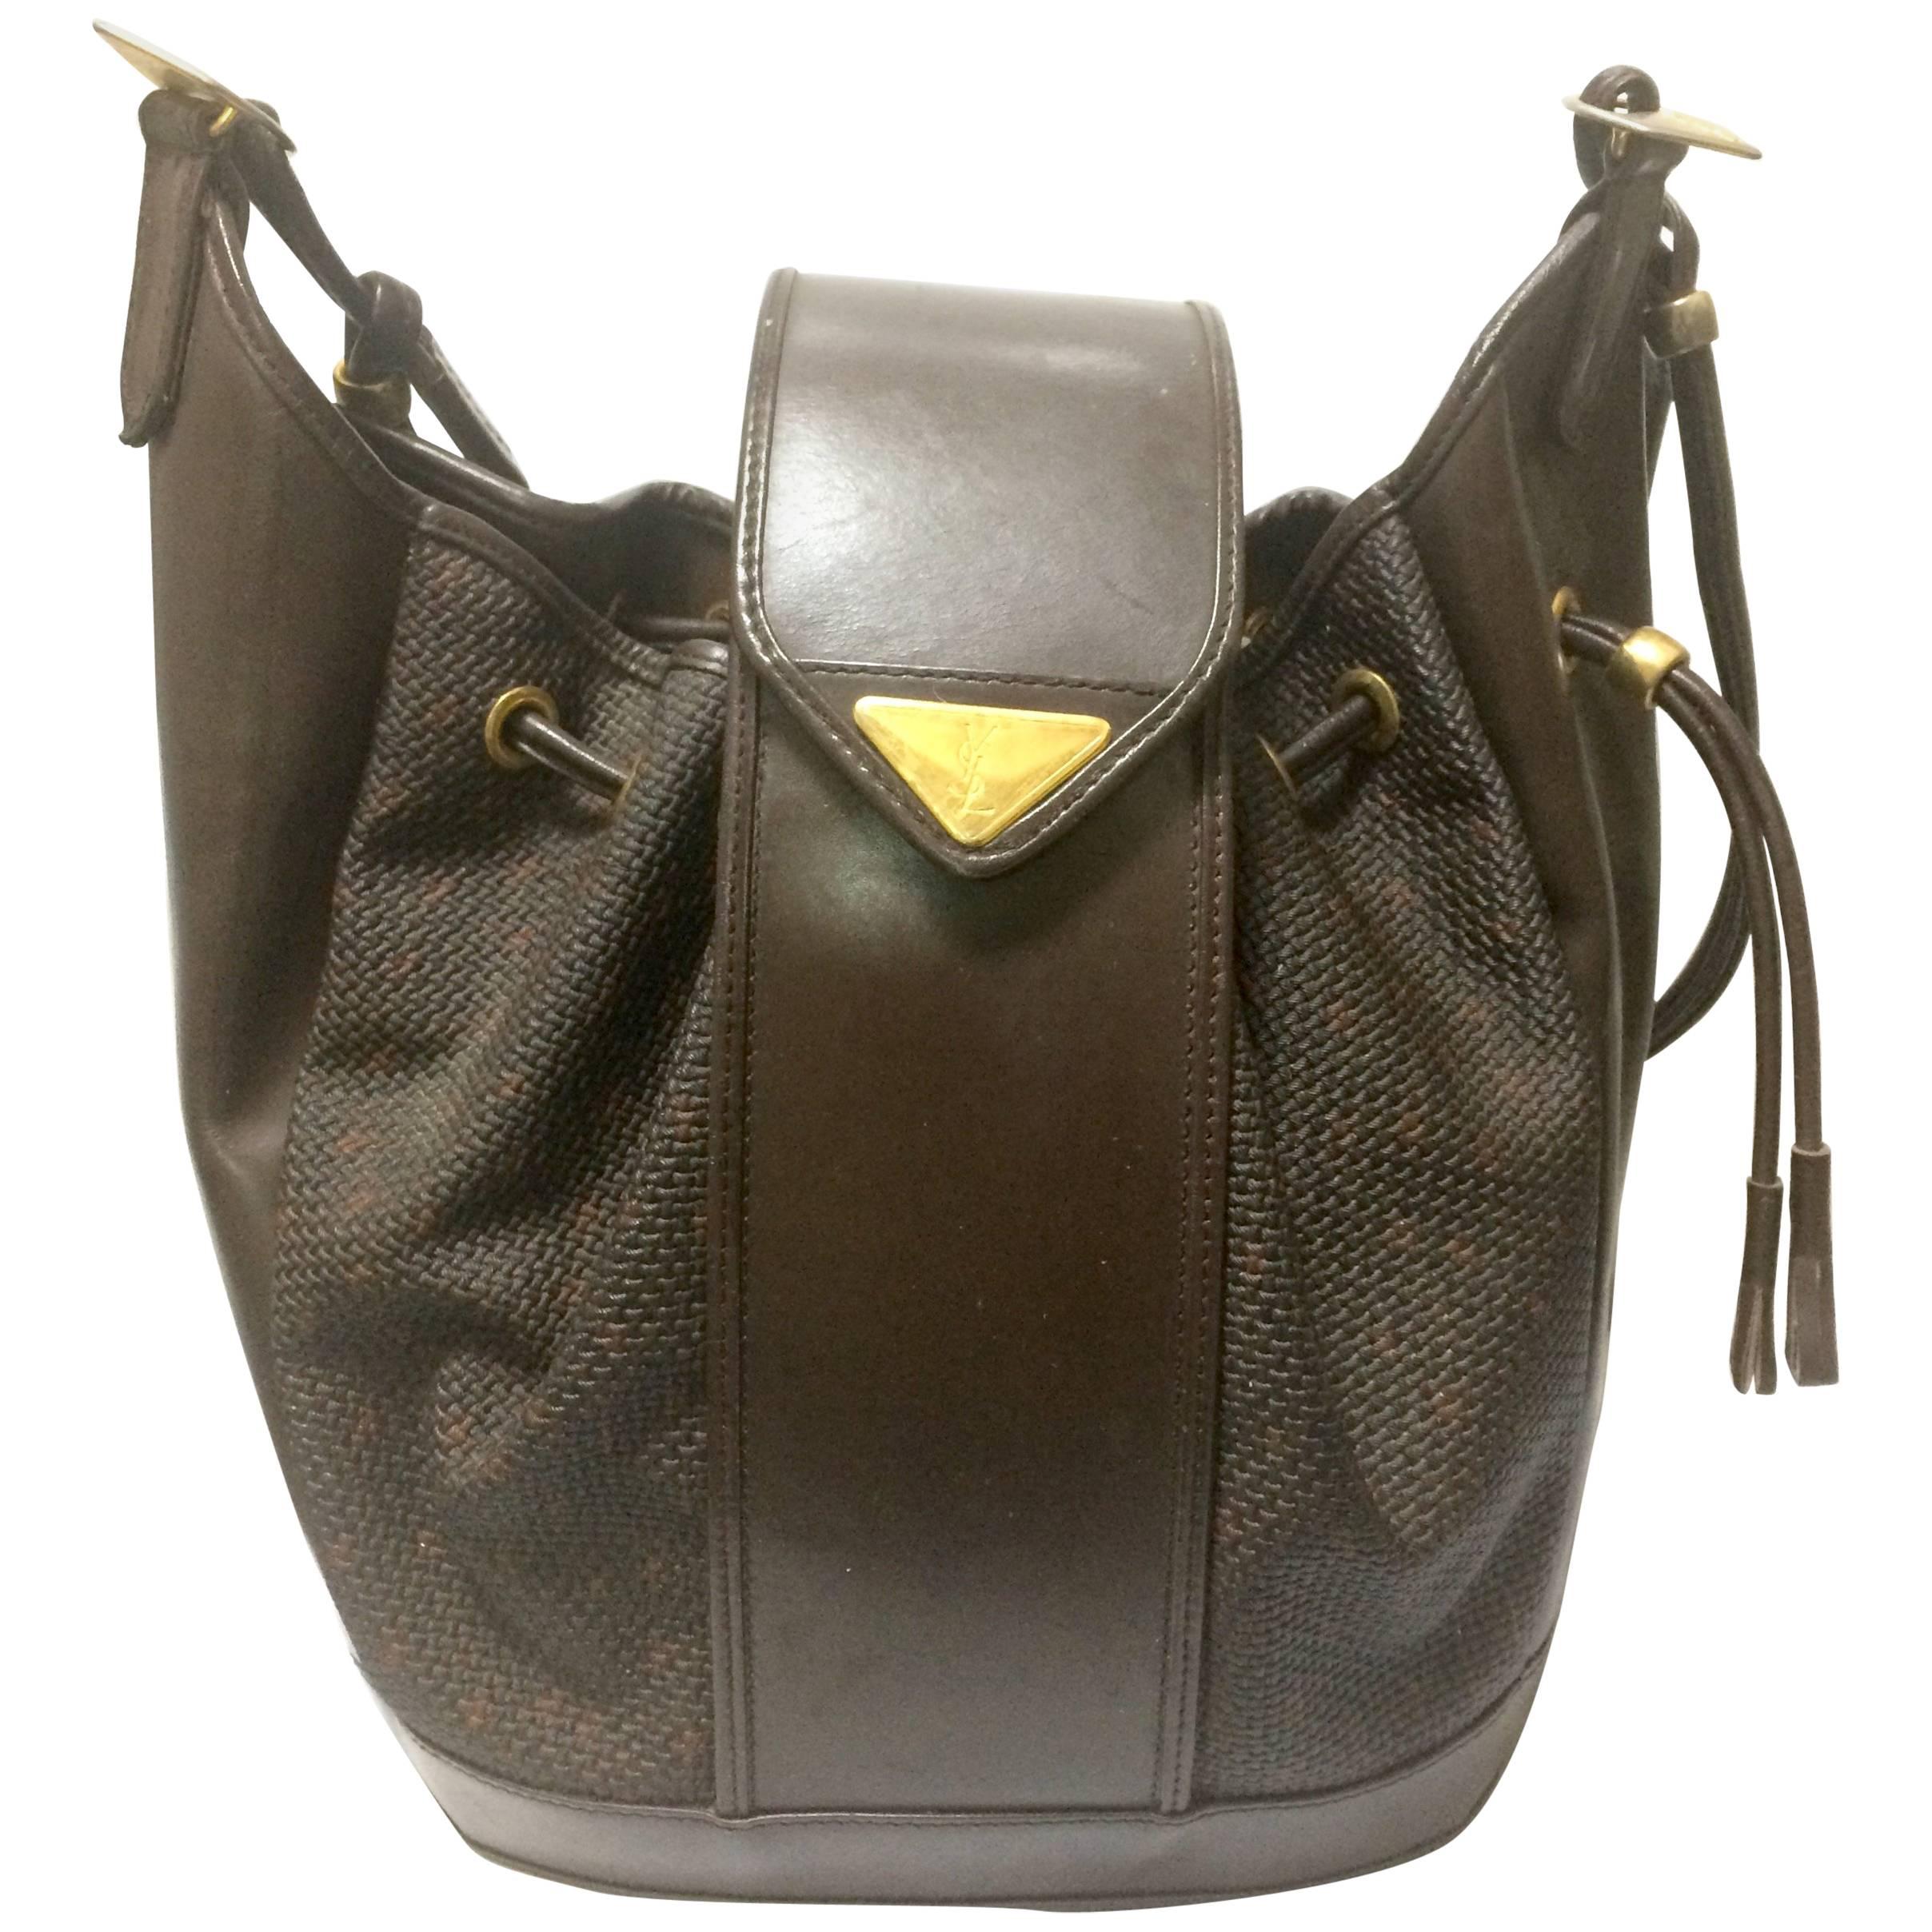 Vintage Yves Saint Laurent  brown hobo bucket shoulder bag with golden YSL motif